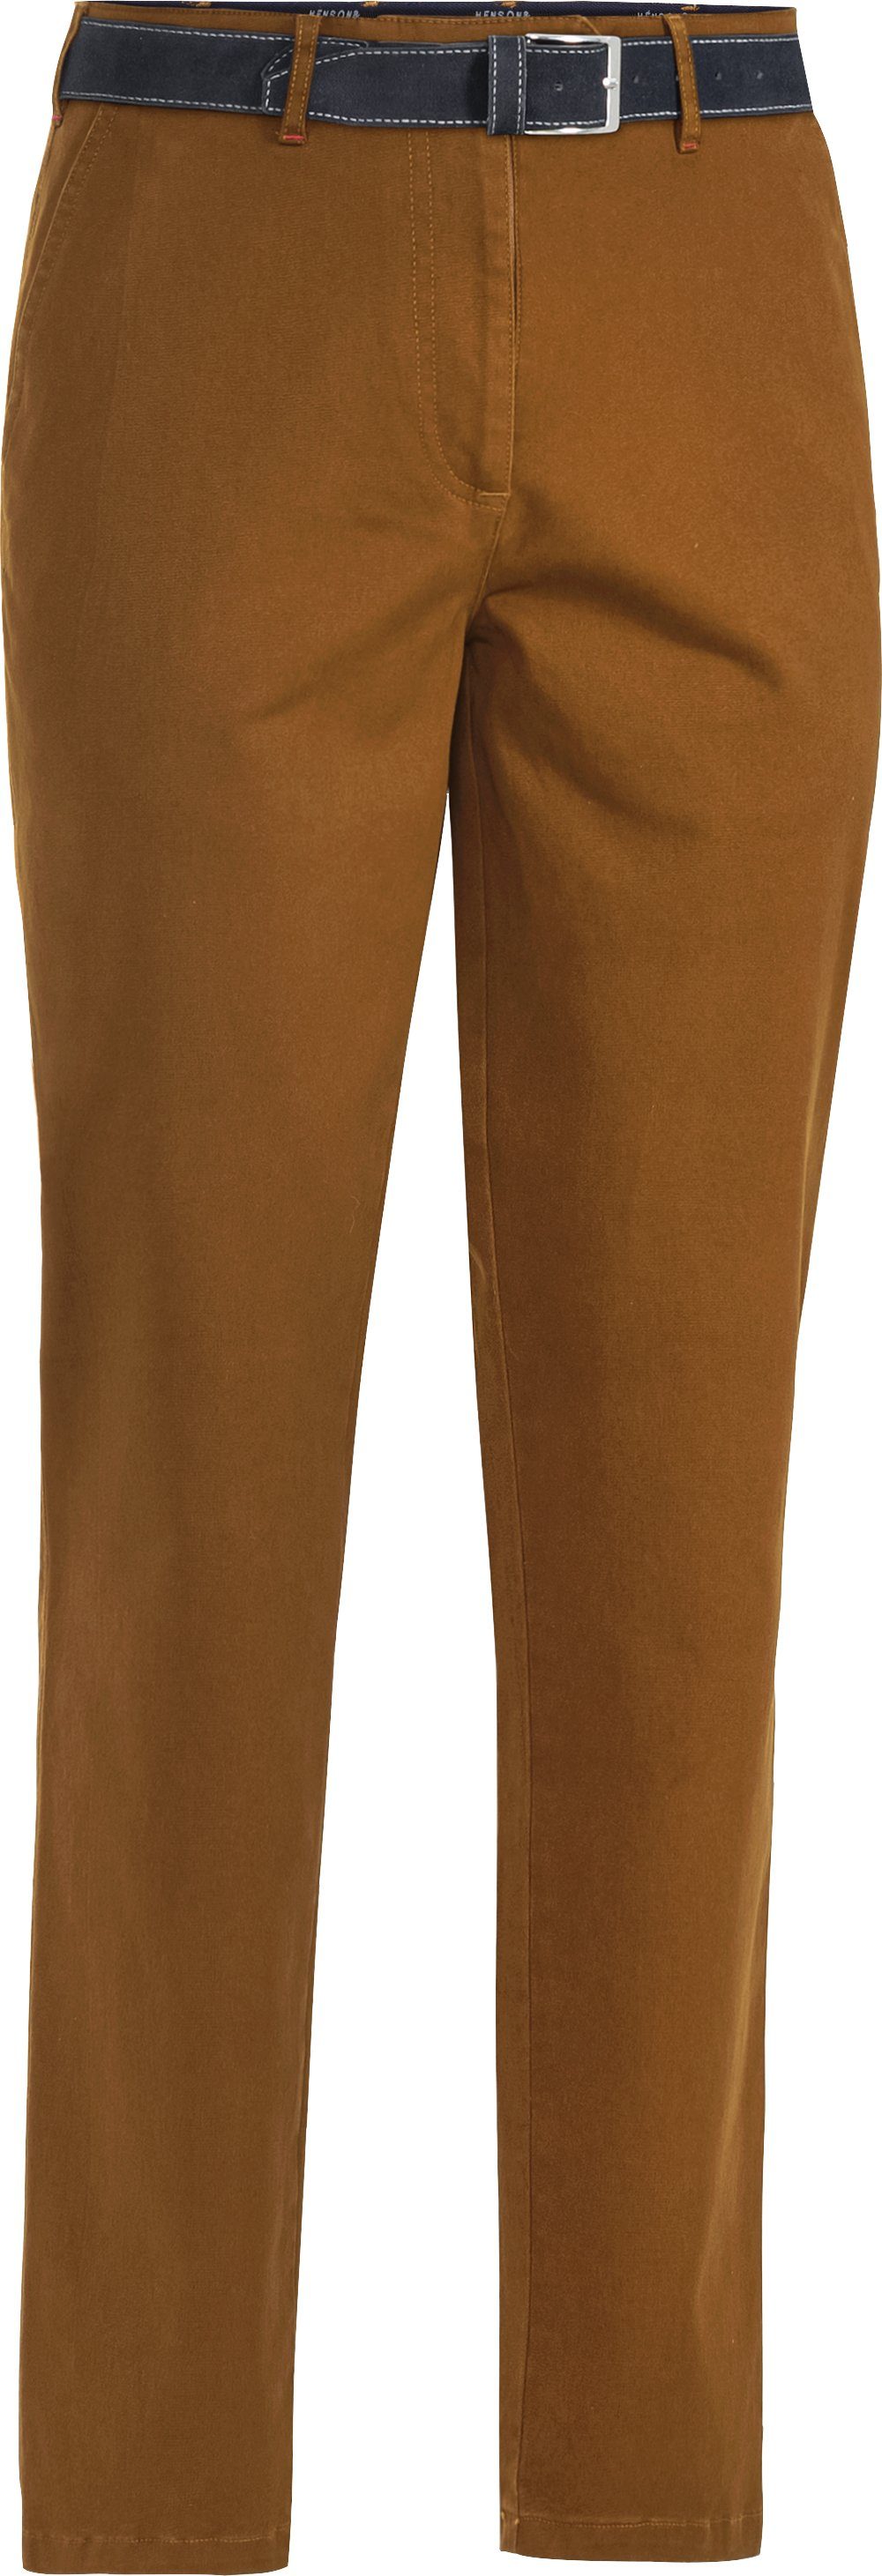 HENSON&HENSON Stretch-Hose in farbintensiver, formstabiler Twill-Qualität mit passendem Gürtel gelb